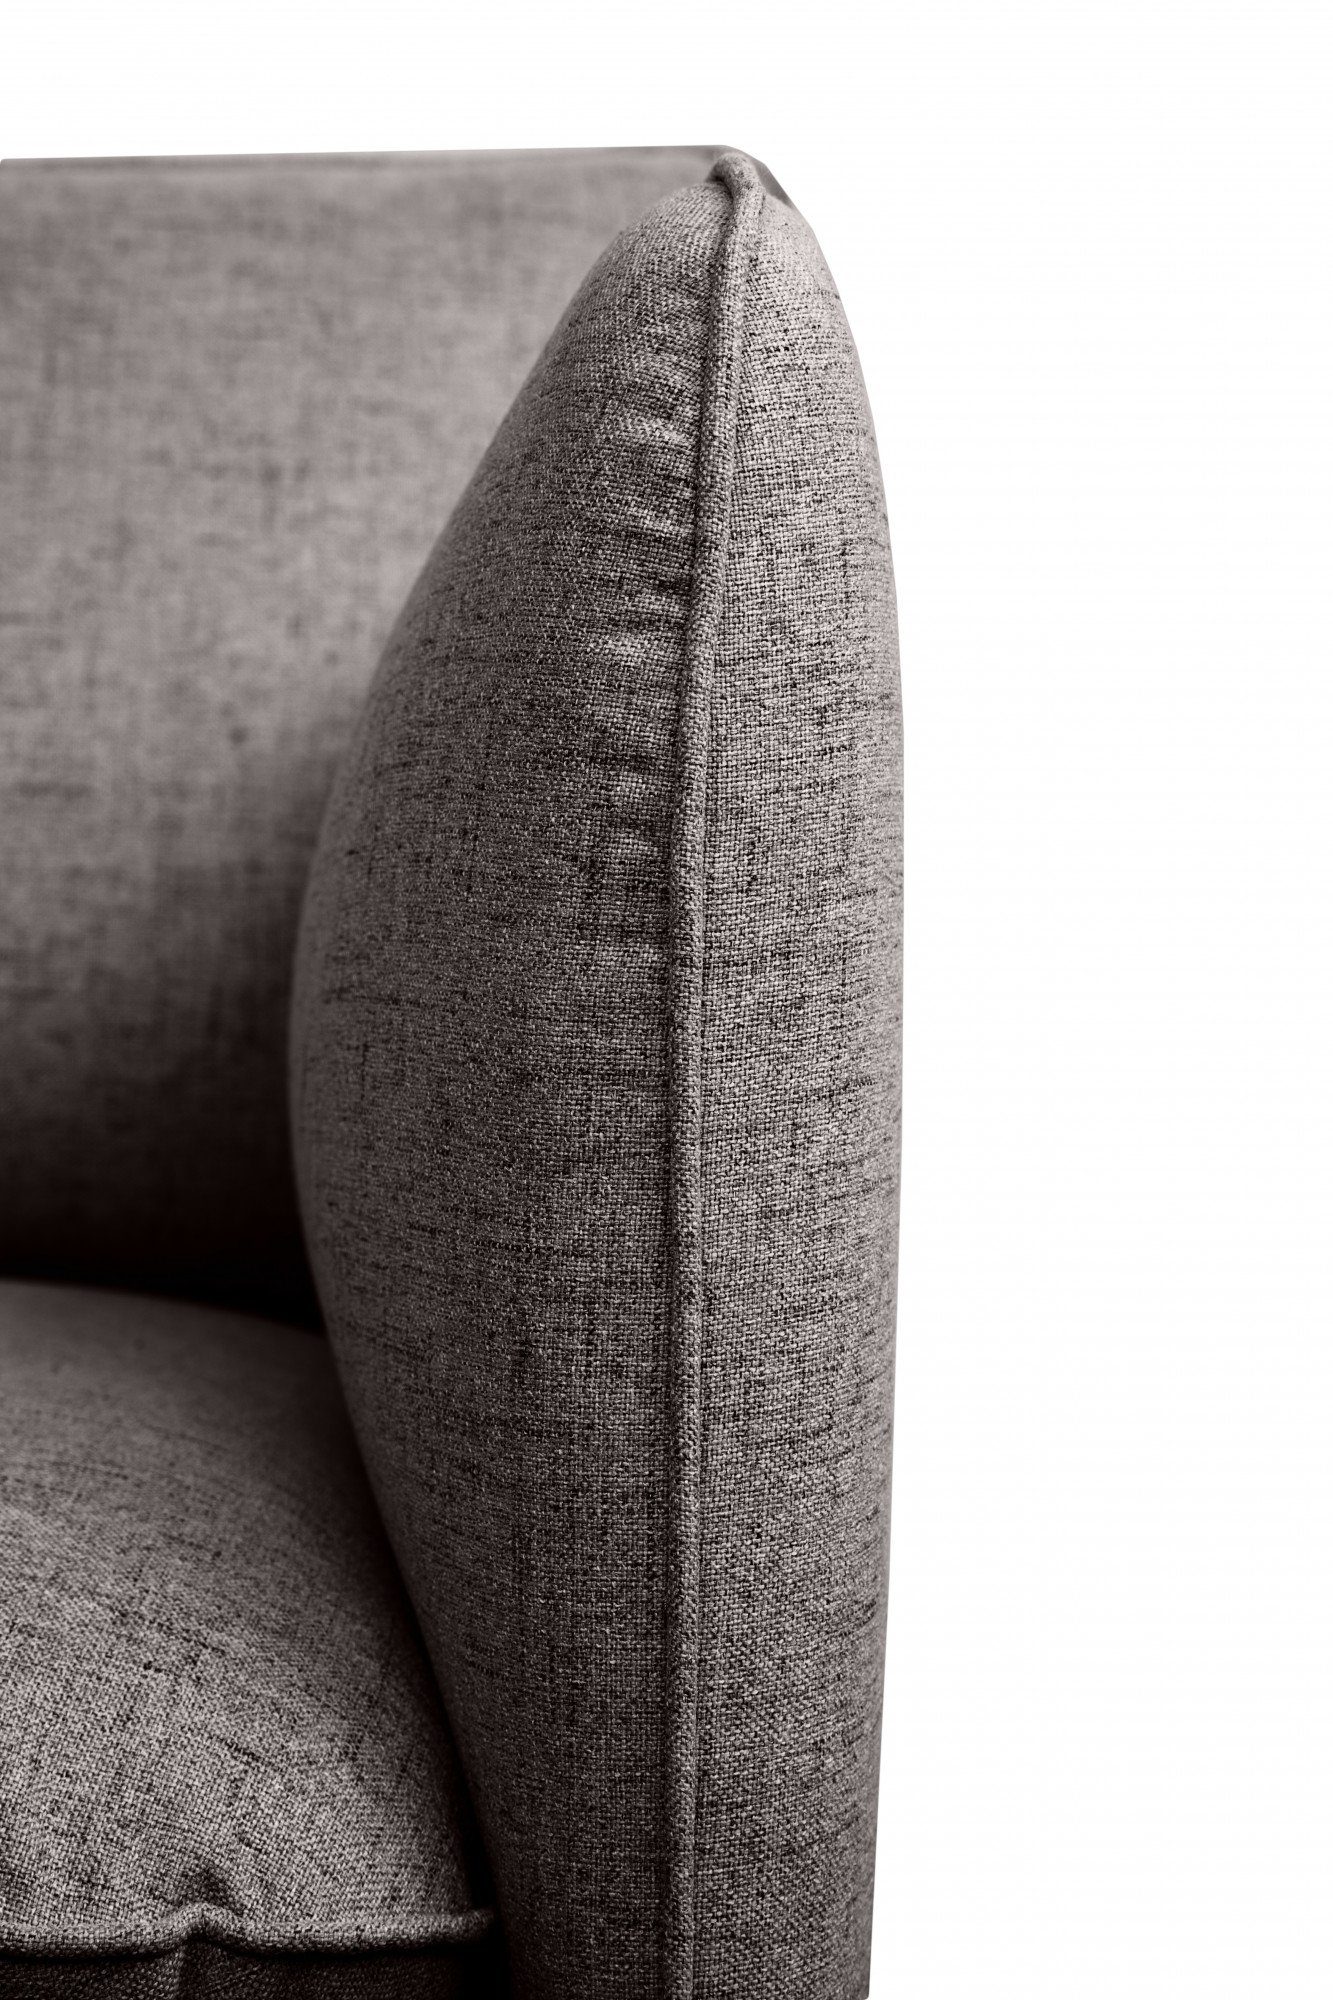 schlanken Sessel Design auf Metallfüßen Skalle, andas minimalistisches